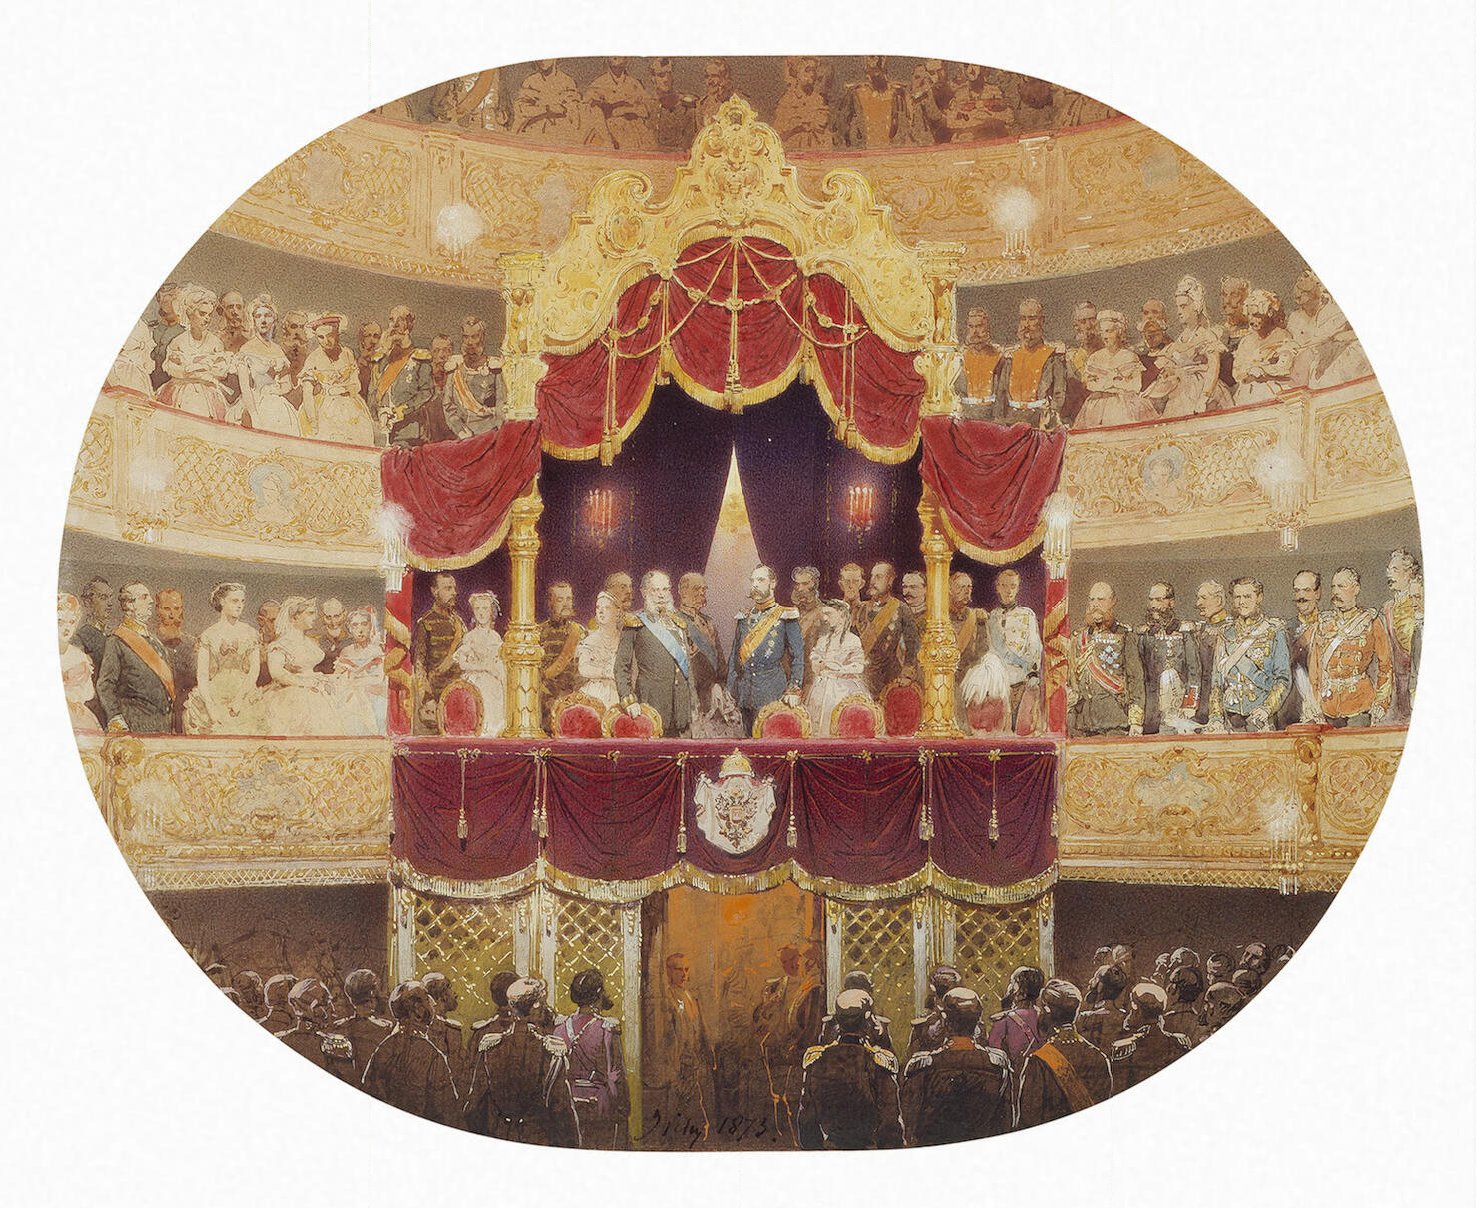 Театр в царской россии